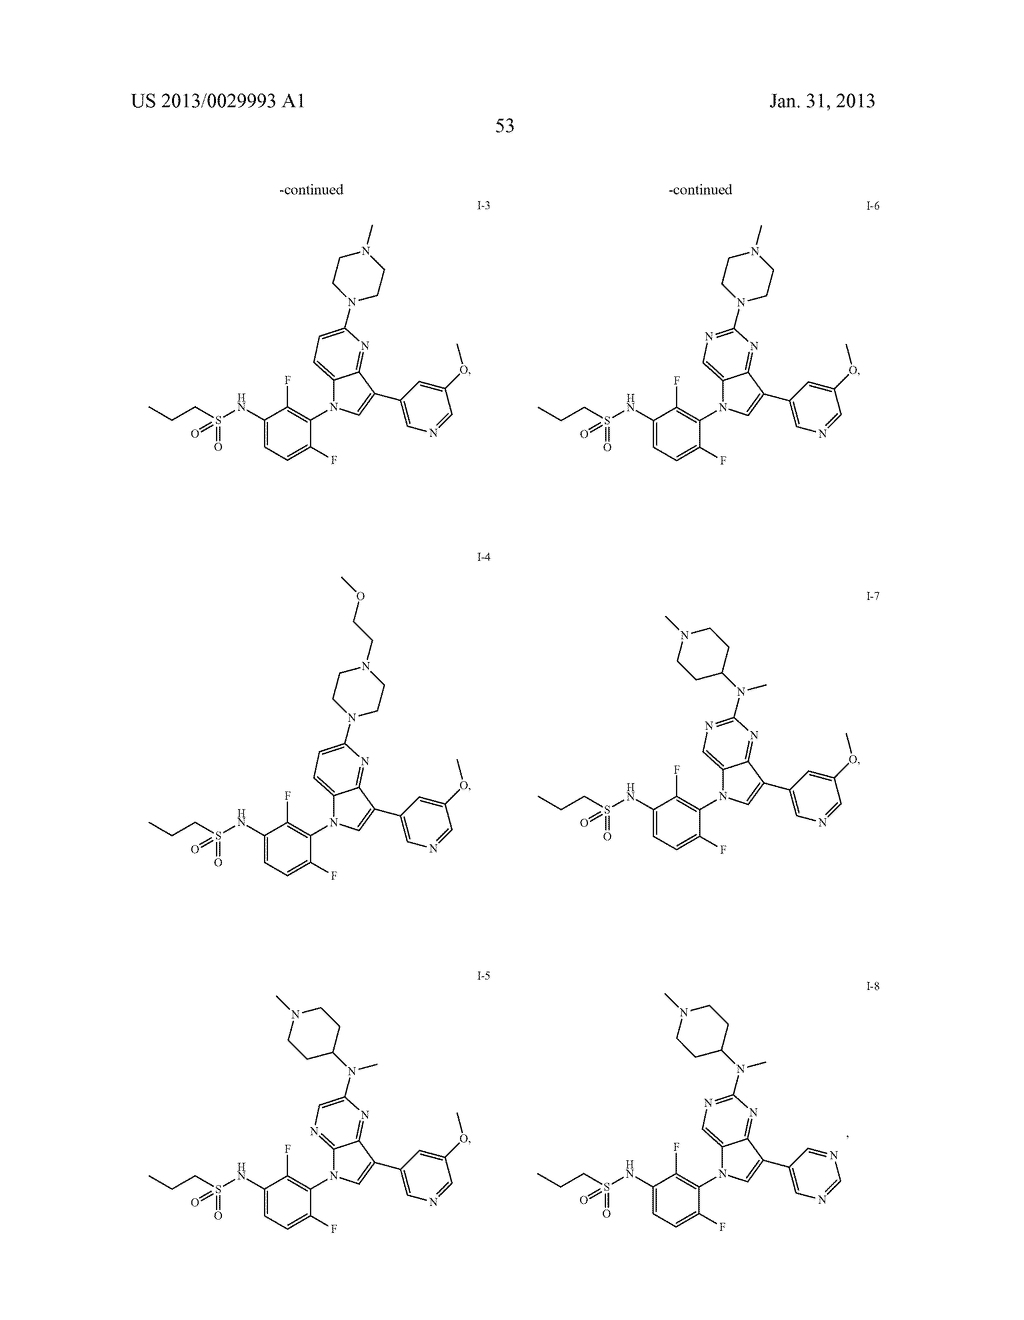 AZAINDOLYLPHENYL SULFONAMIDES AS SERINE/THREONINE KINASE INHIBITORS - diagram, schematic, and image 54